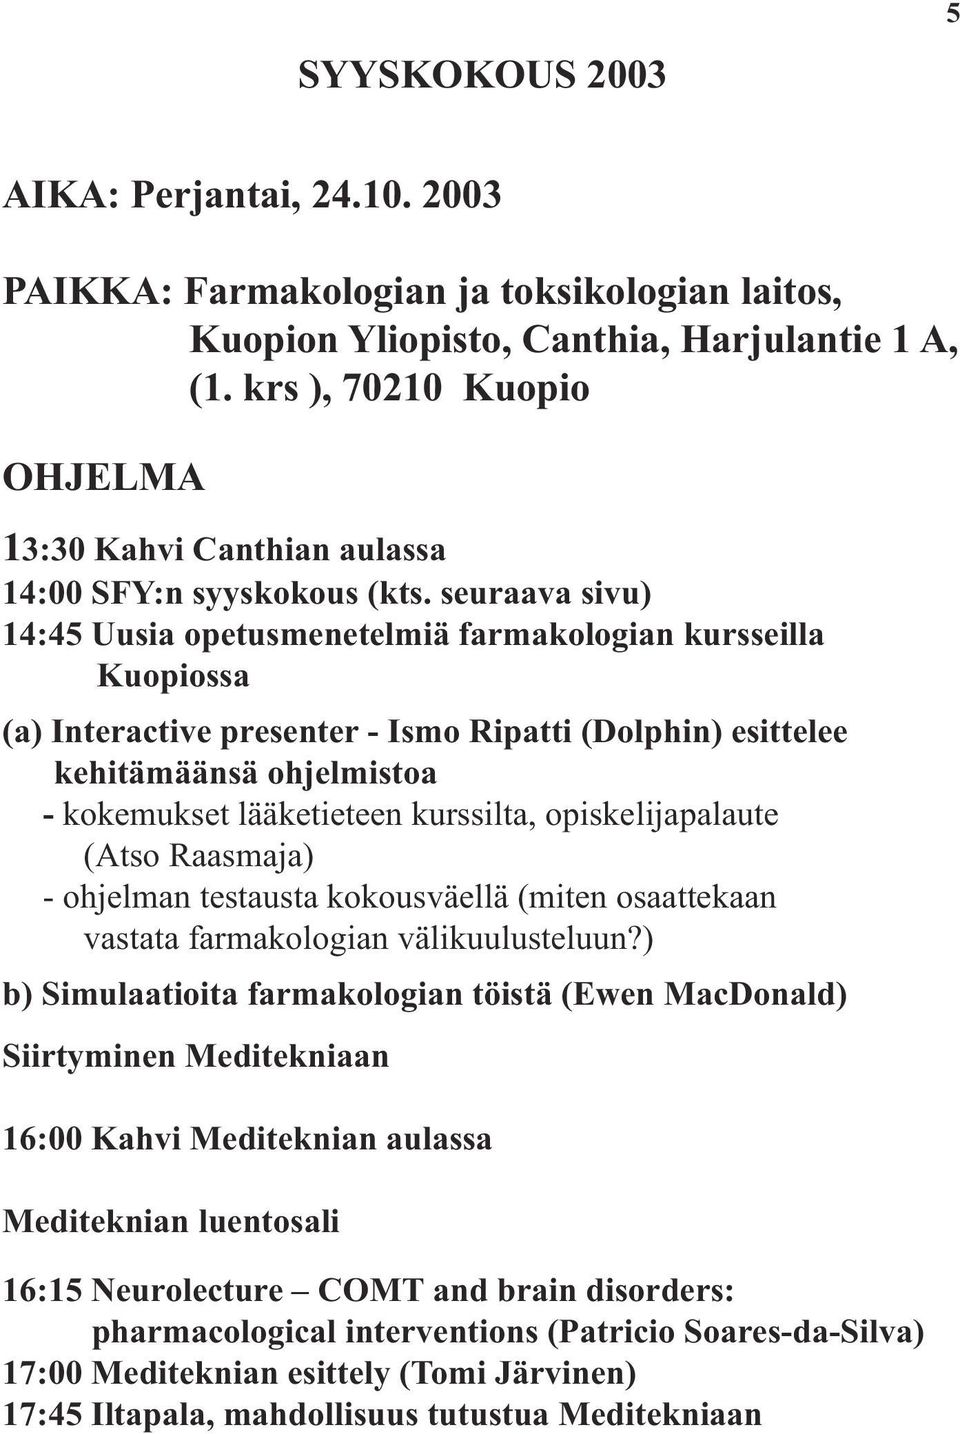 seuraava sivu) 14:45 Uusia opetusmenetelmiä farmakologian kursseilla Kuopiossa (a) Interactive presenter - Ismo Ripatti (Dolphin) esittelee kehitämäänsä ohjelmistoa - kokemukset lääketieteen